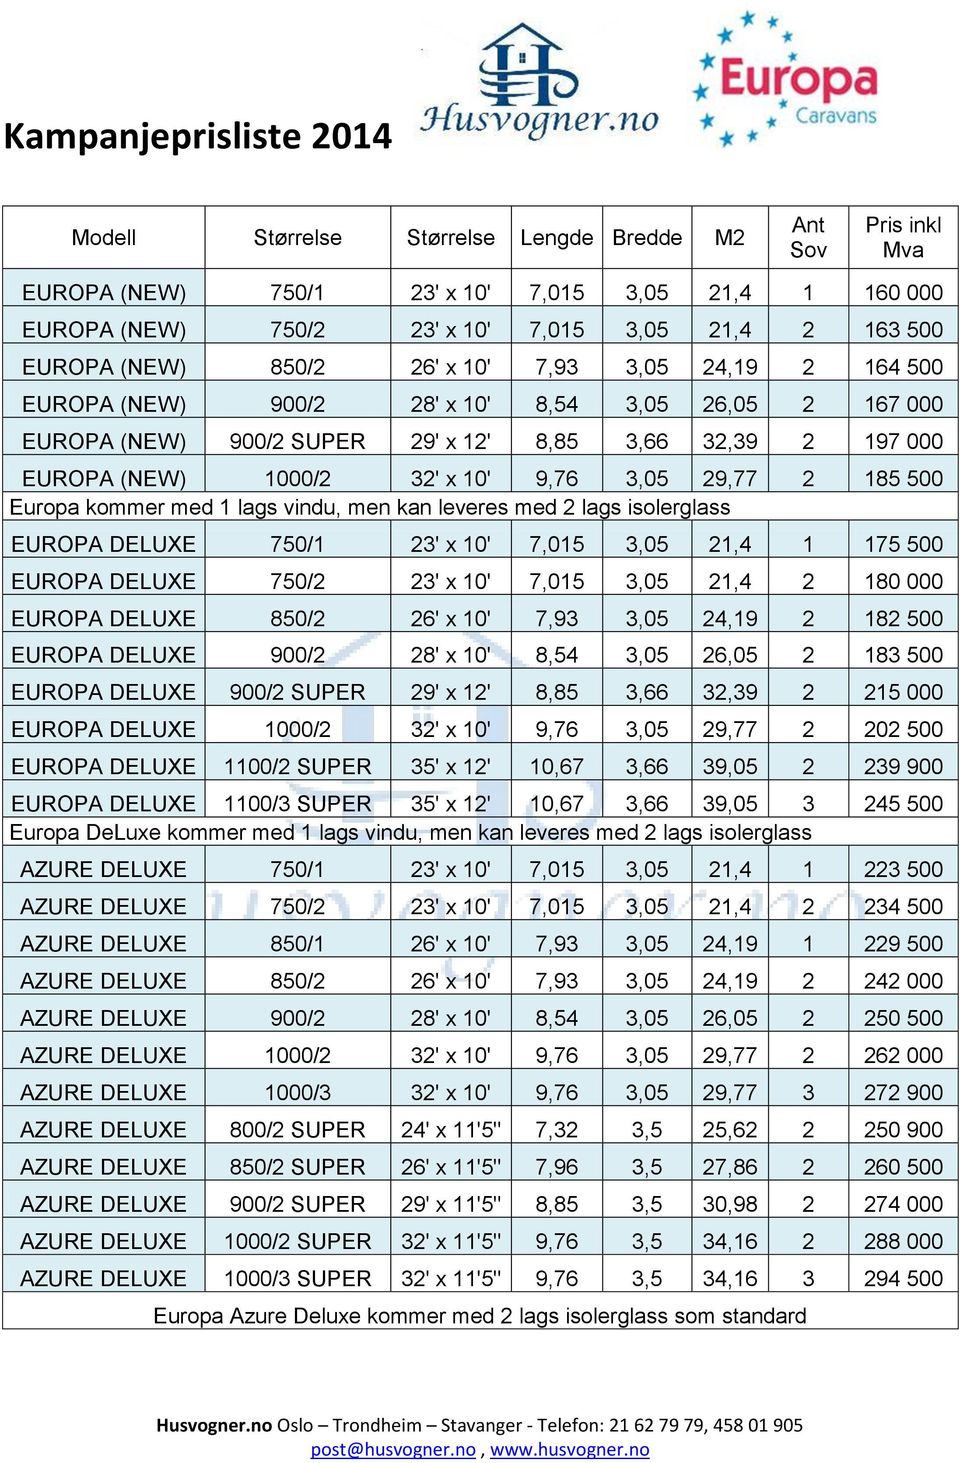 500 Europa kommer med 1 lags vindu, men kan leveres med 2 lags isolerglass EUROPA DELUXE 750/1 23' x 10' 7,015 3,05 21,4 1 175 500 EUROPA DELUXE 750/2 23' x 10' 7,015 3,05 21,4 2 180 000 EUROPA